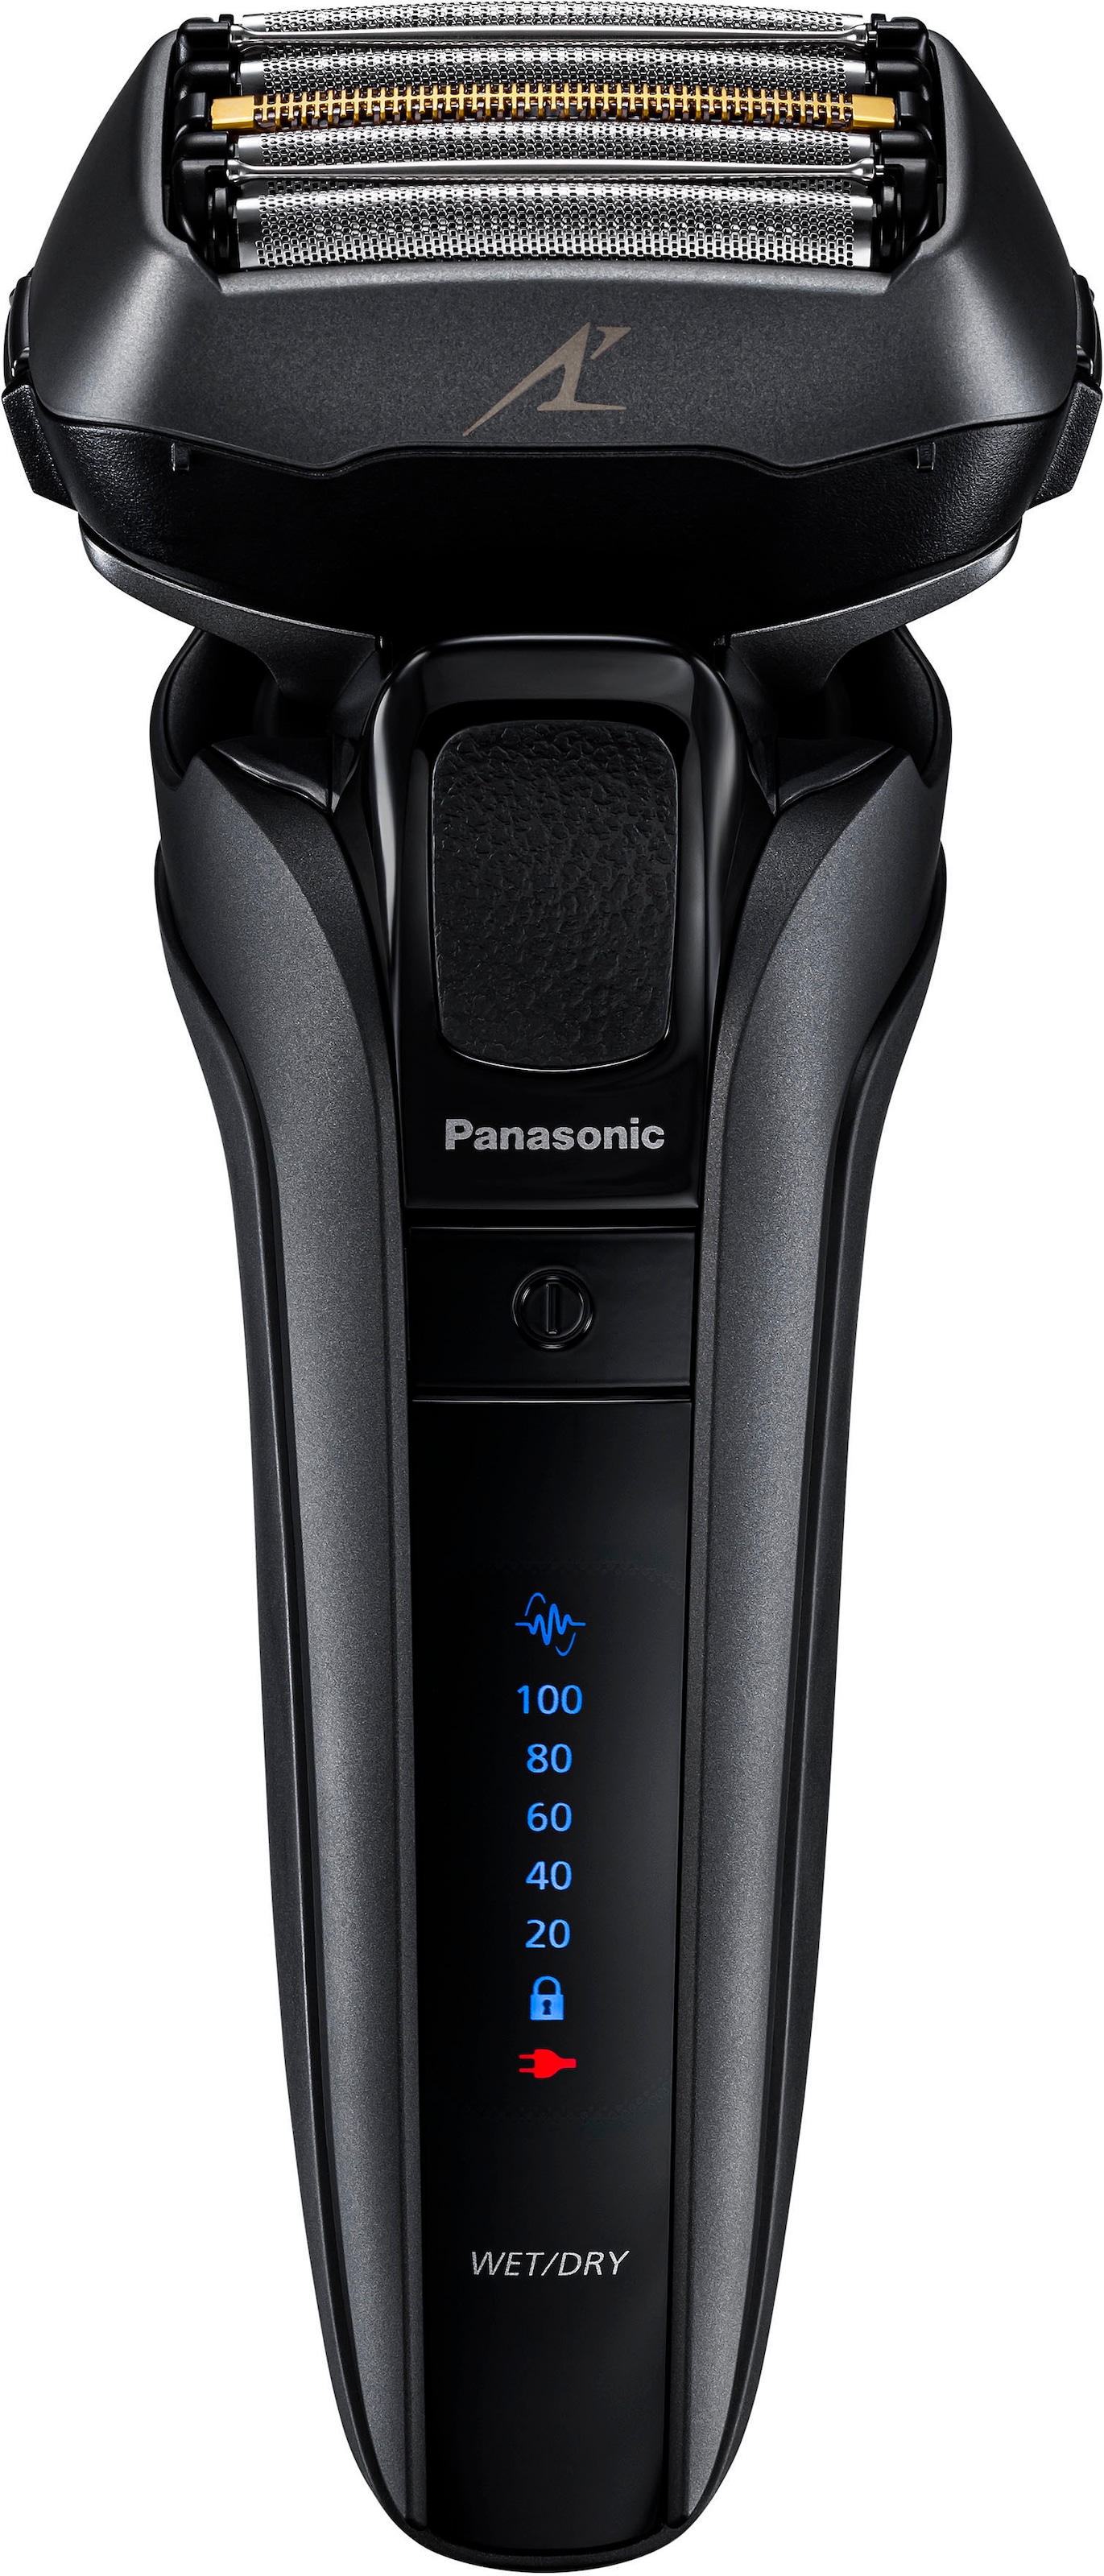 Panasonic Elektrorasierer »Series 900 Premium Rasierer ES-LV9U«,  Reinigungsstation, Langhaartrimmer mit 3 Jahren XXL Garantie